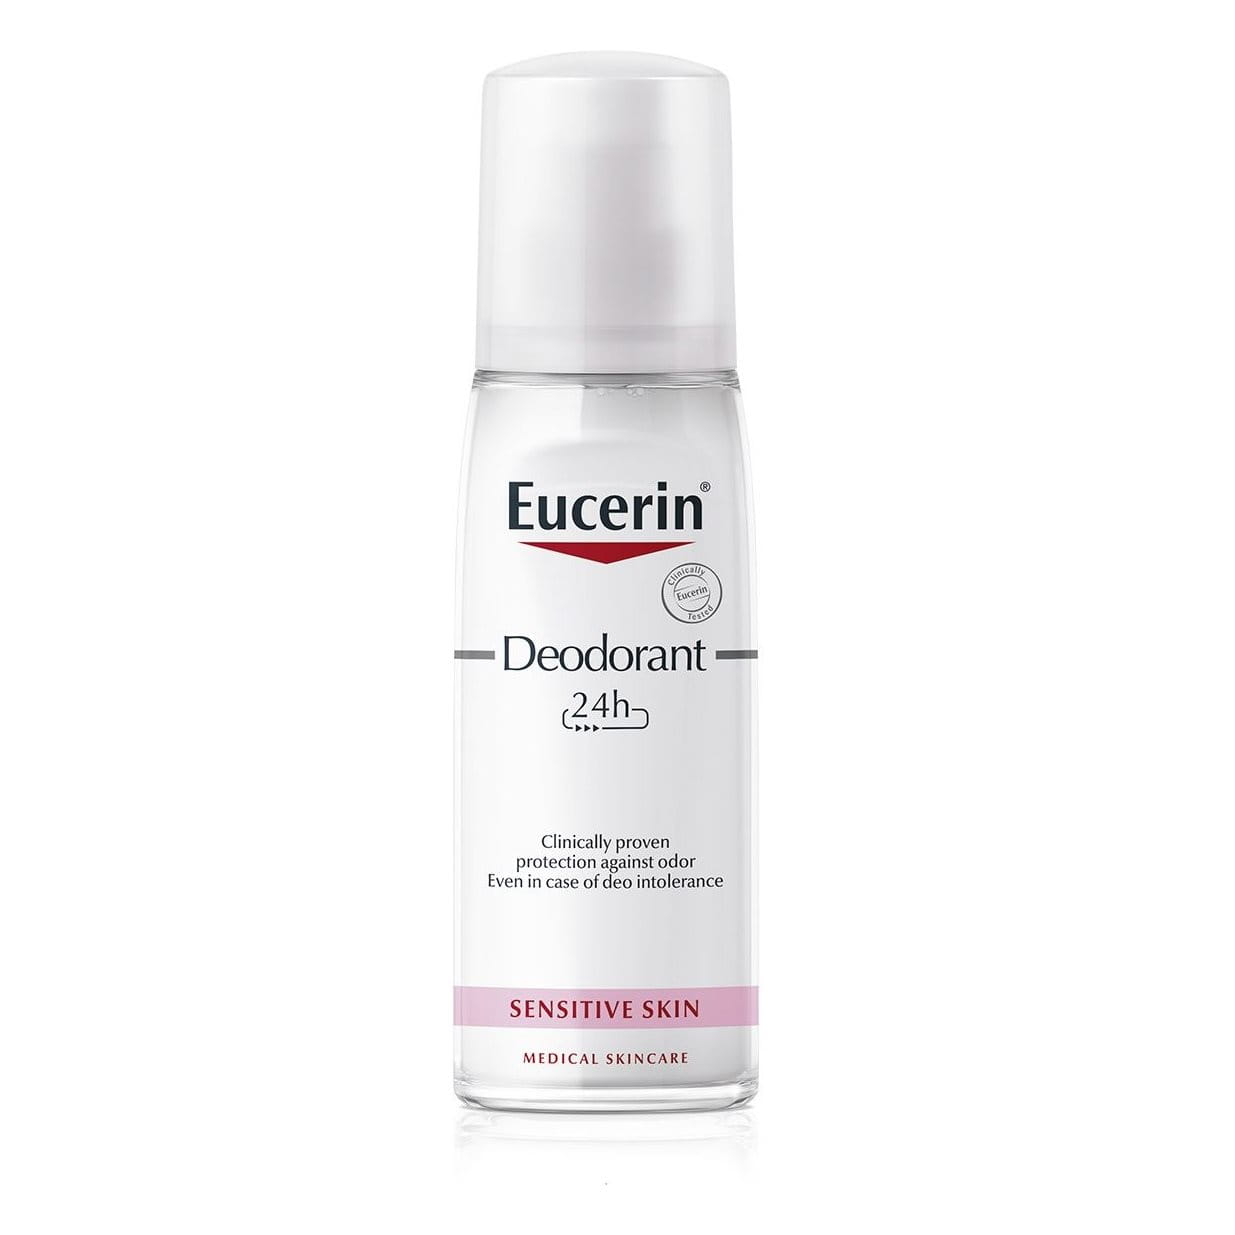 lærred erhvervsdrivende psykologisk 24h Deodorant Sensitive Skin Pump Spray| for sensitive skin | Eucerin